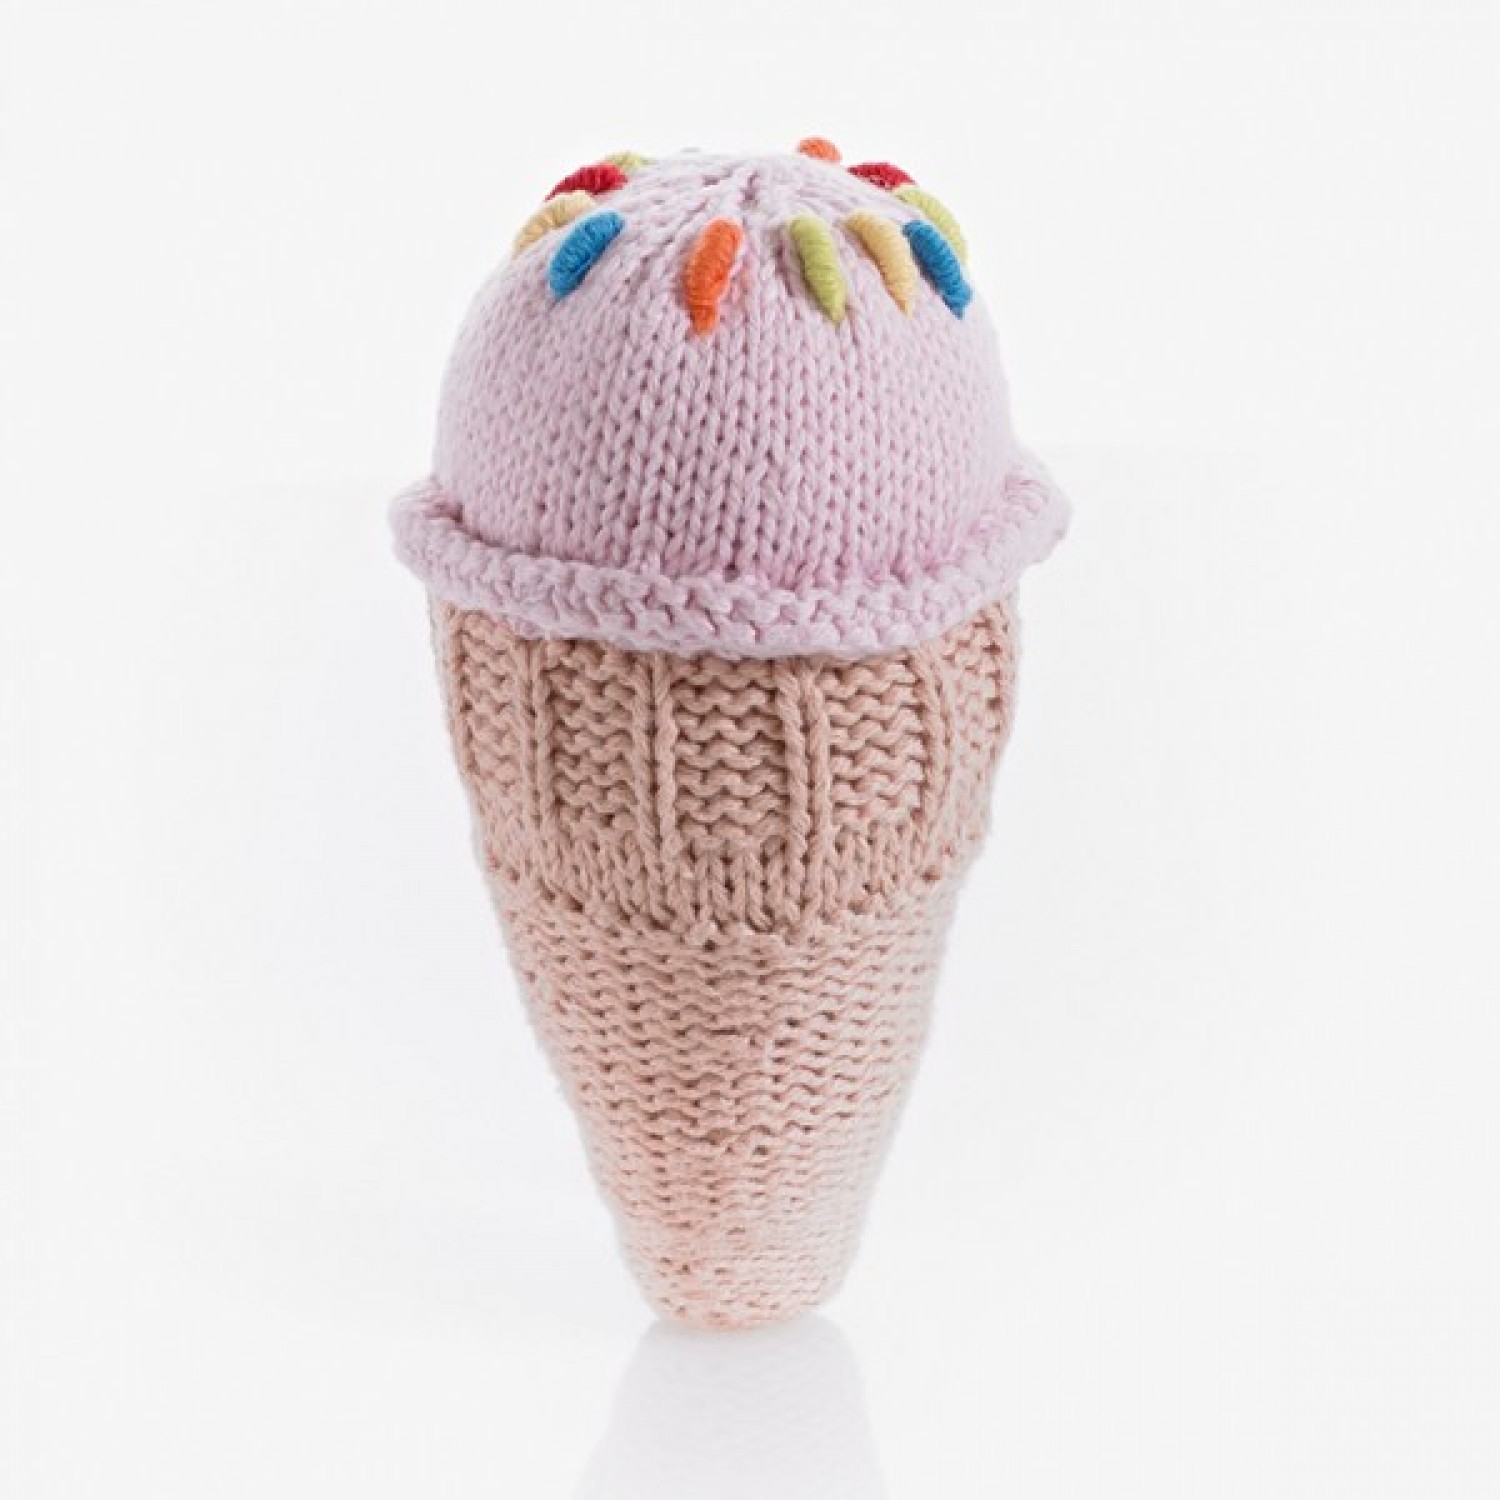 Pebble Ice Cream Rattle - Strawberry Cone